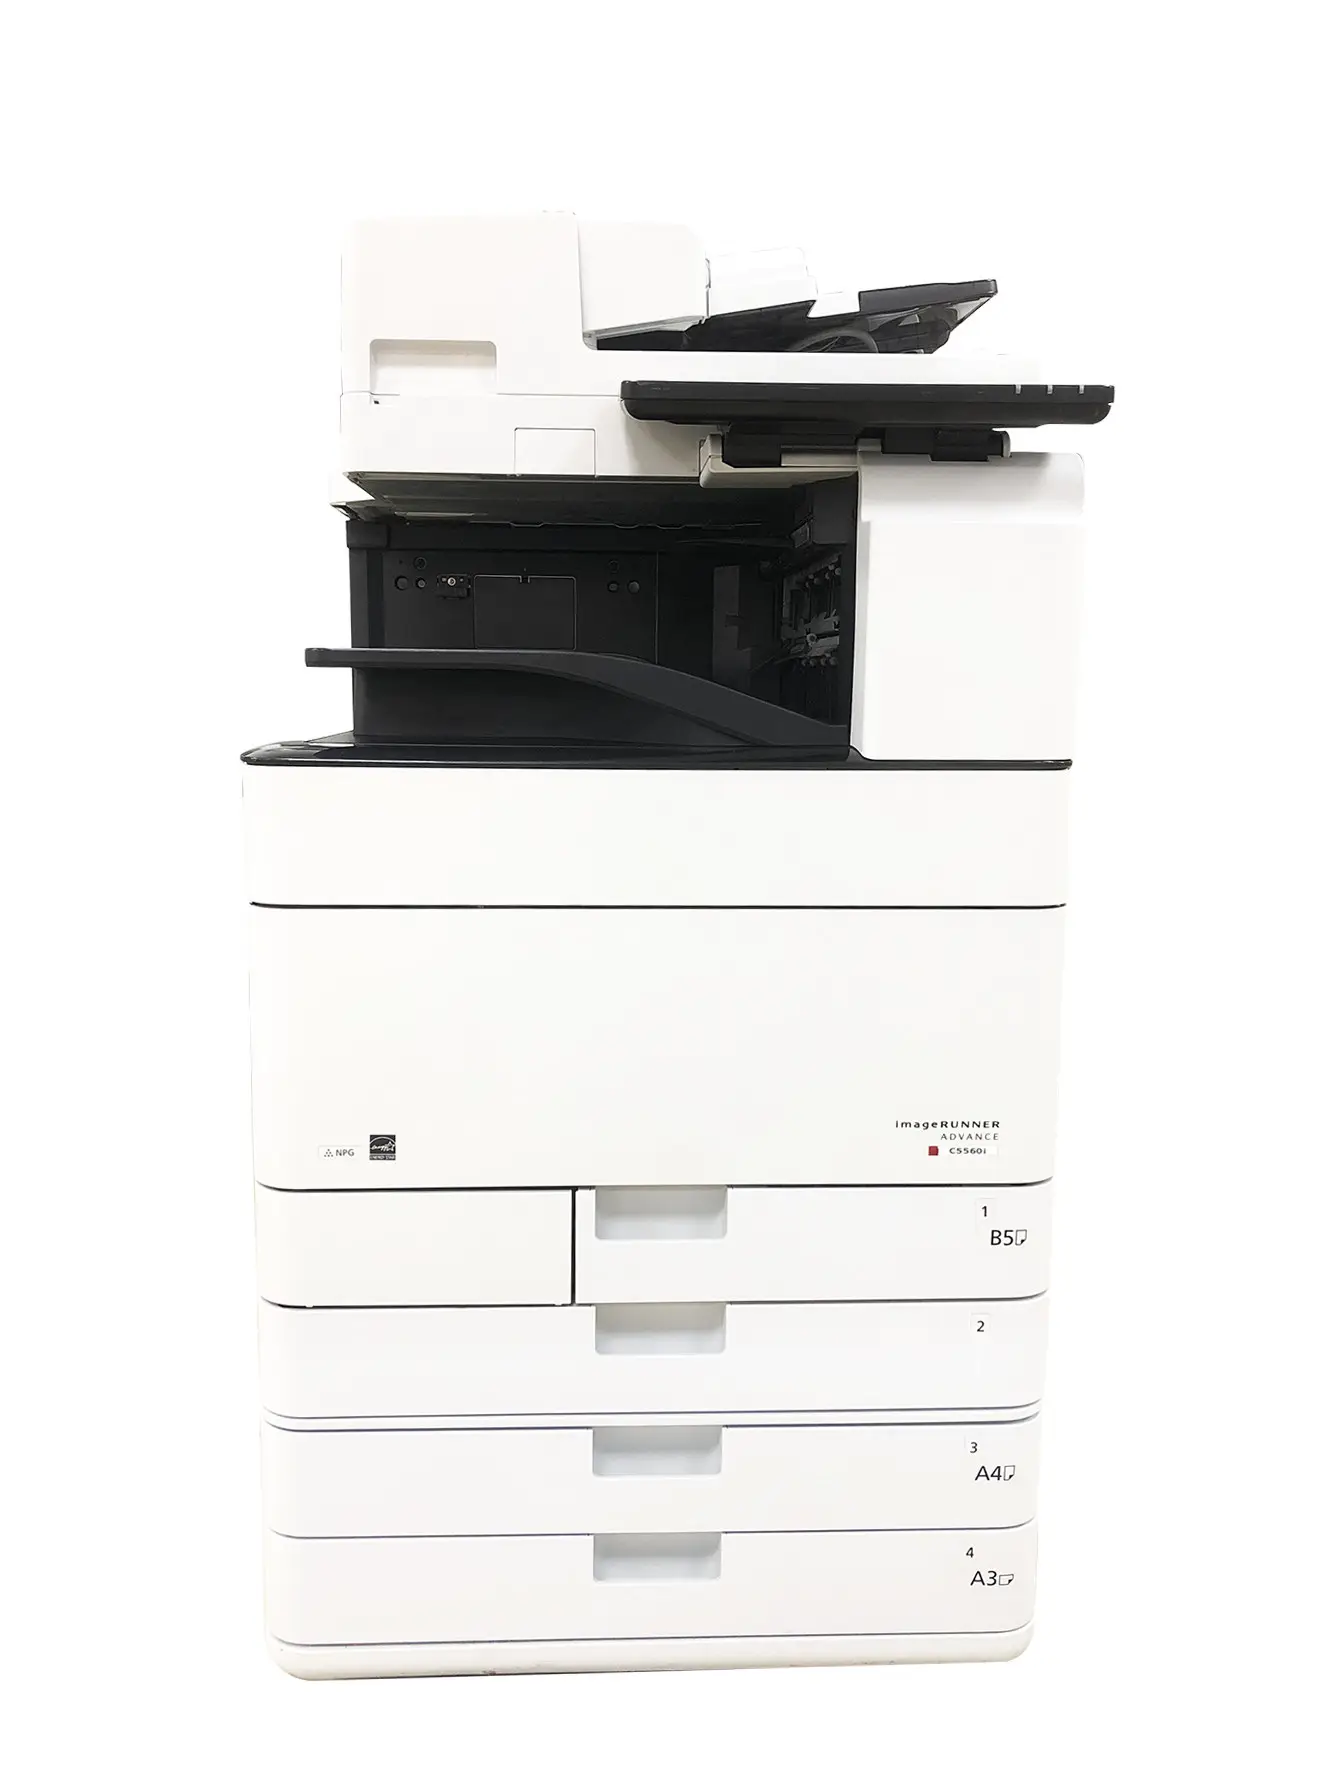 Fotocopiadora reacondicionada Tienda de impresoras Uso Fotocopiadora para C5560 5550/5540/5530